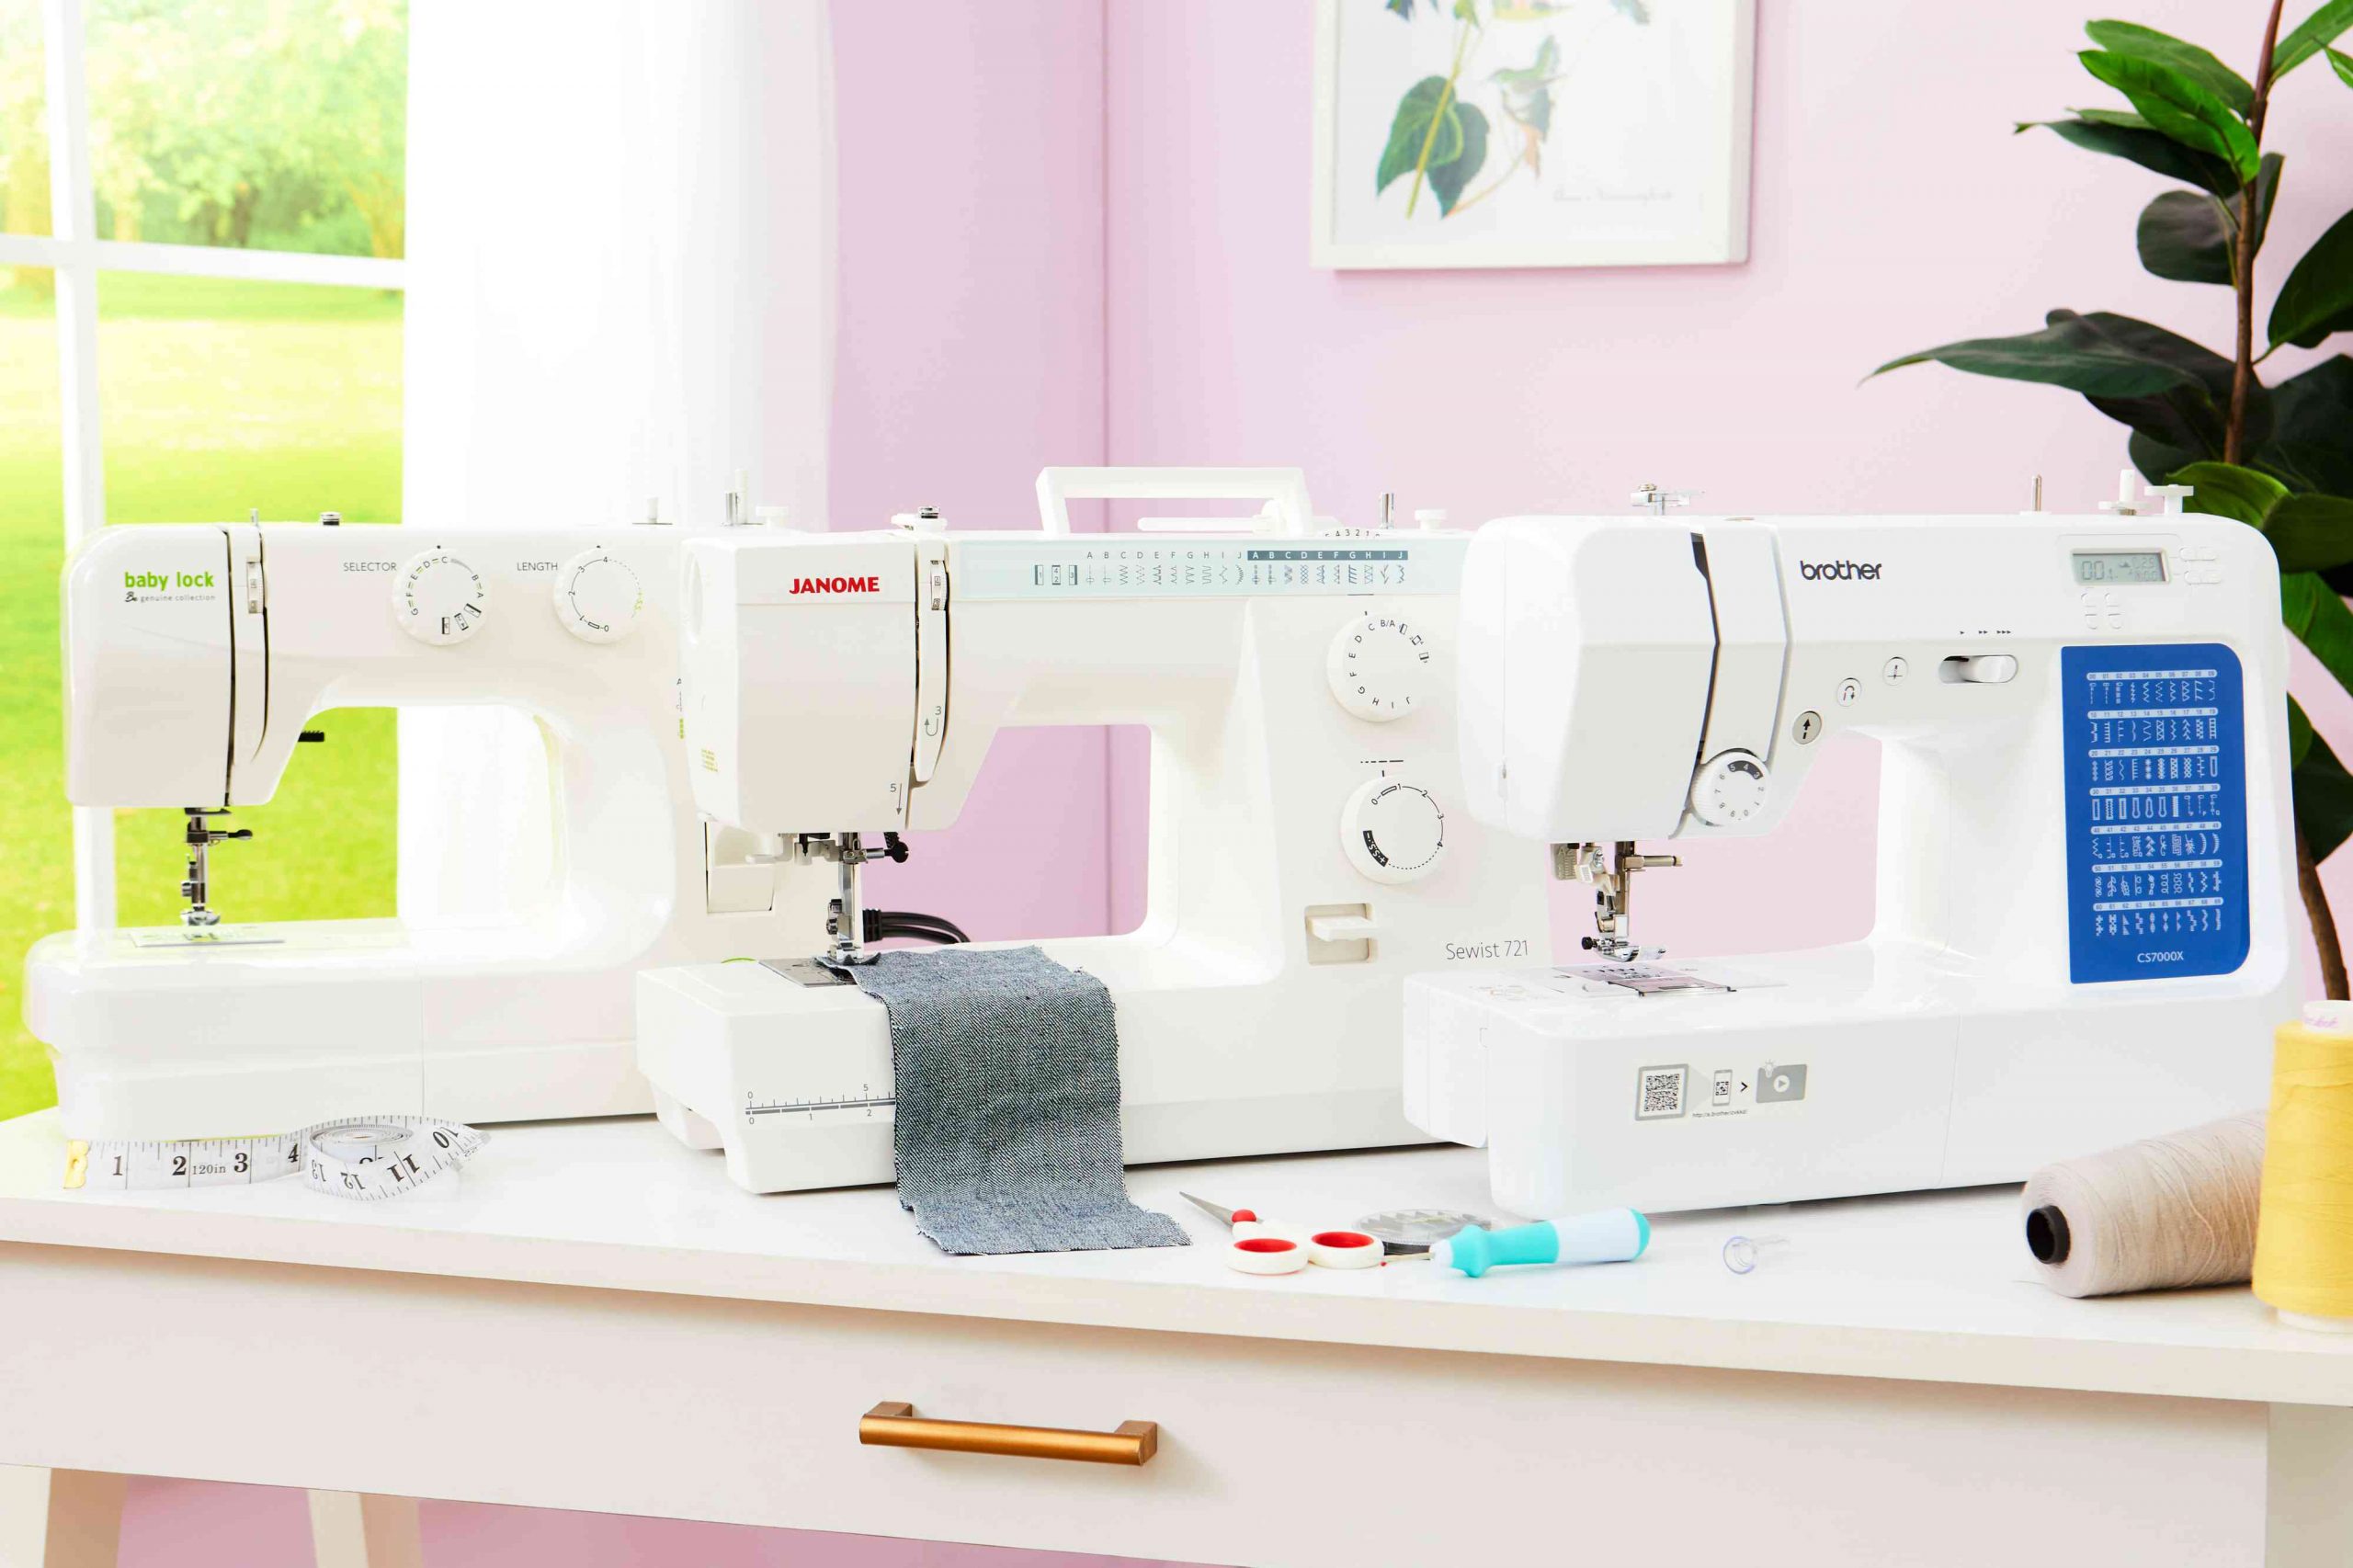 Las mejores máquinas de coser según los clientes (algunas por